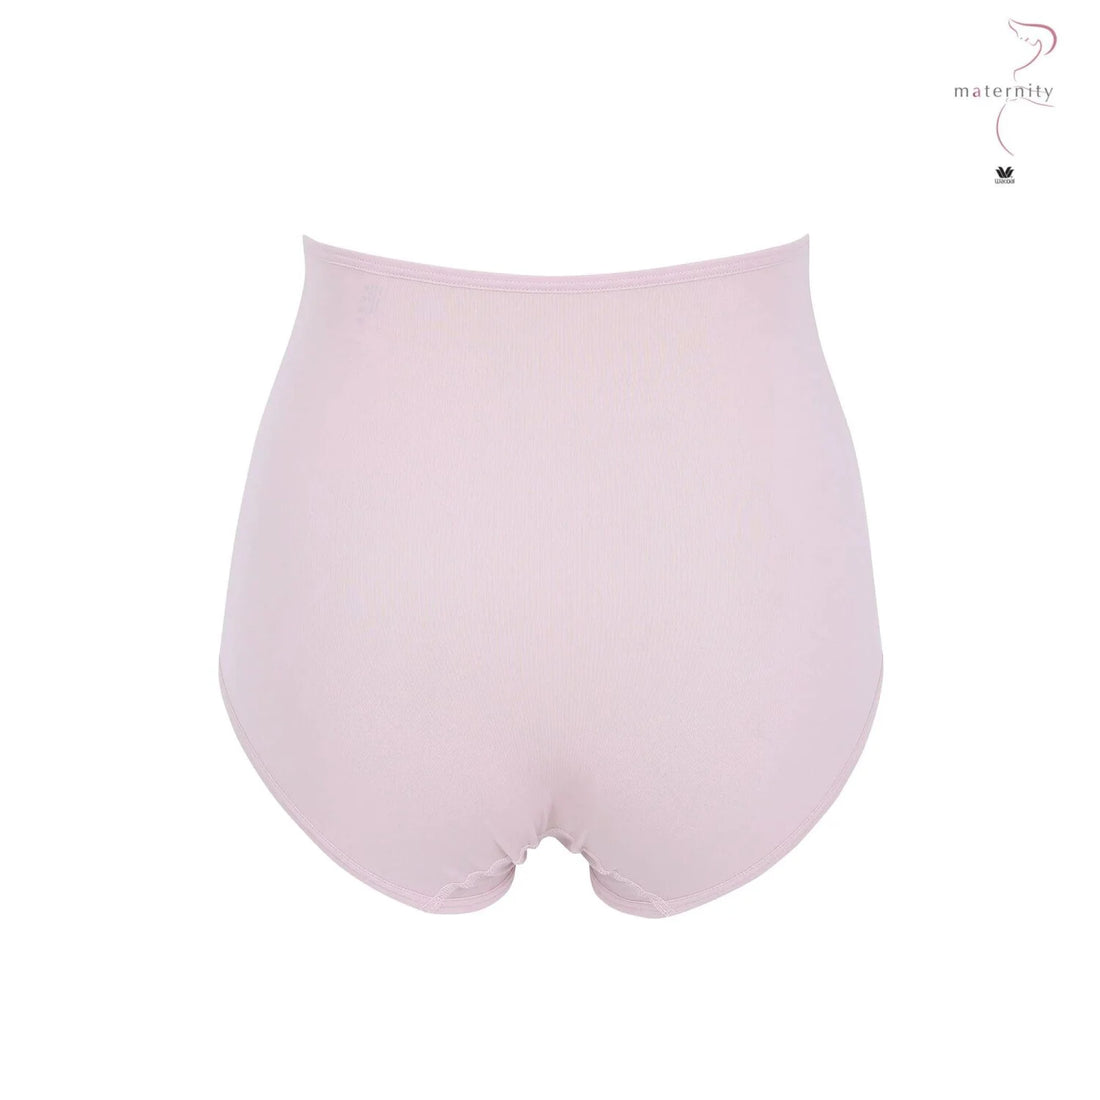 Wacoal Maternity Panty กางเกงในรูปแบบเต็มตัว รุ่น WM6179 สีชมพูกุหลาบป่า(WR)